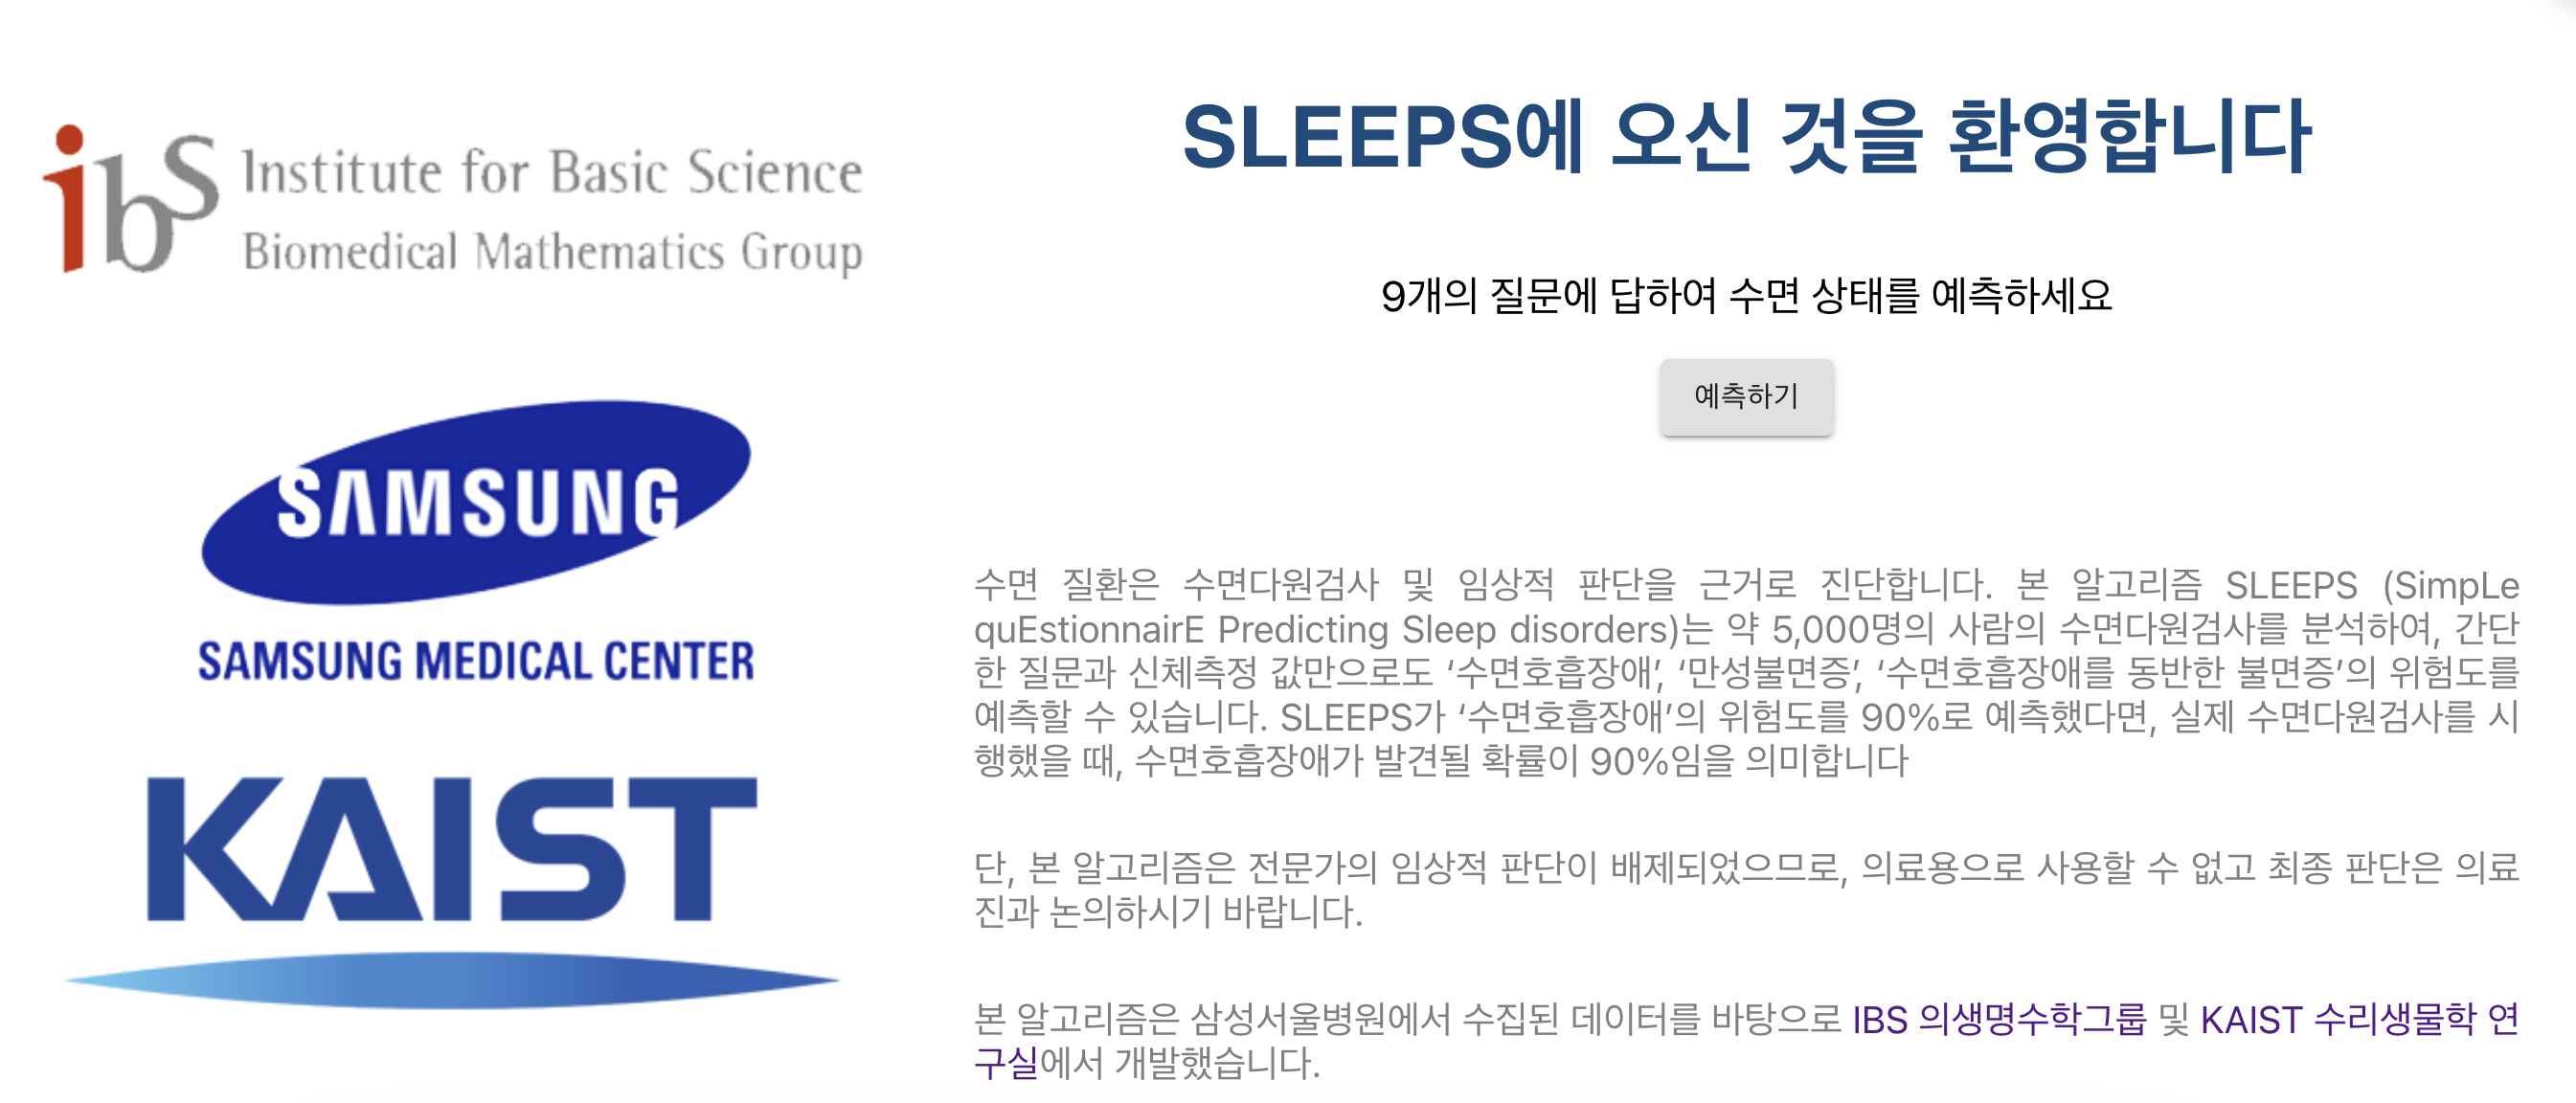 [그림 2] 수면 질환 위험도를 예측할 수 있는 SLEEPS 웹사이트